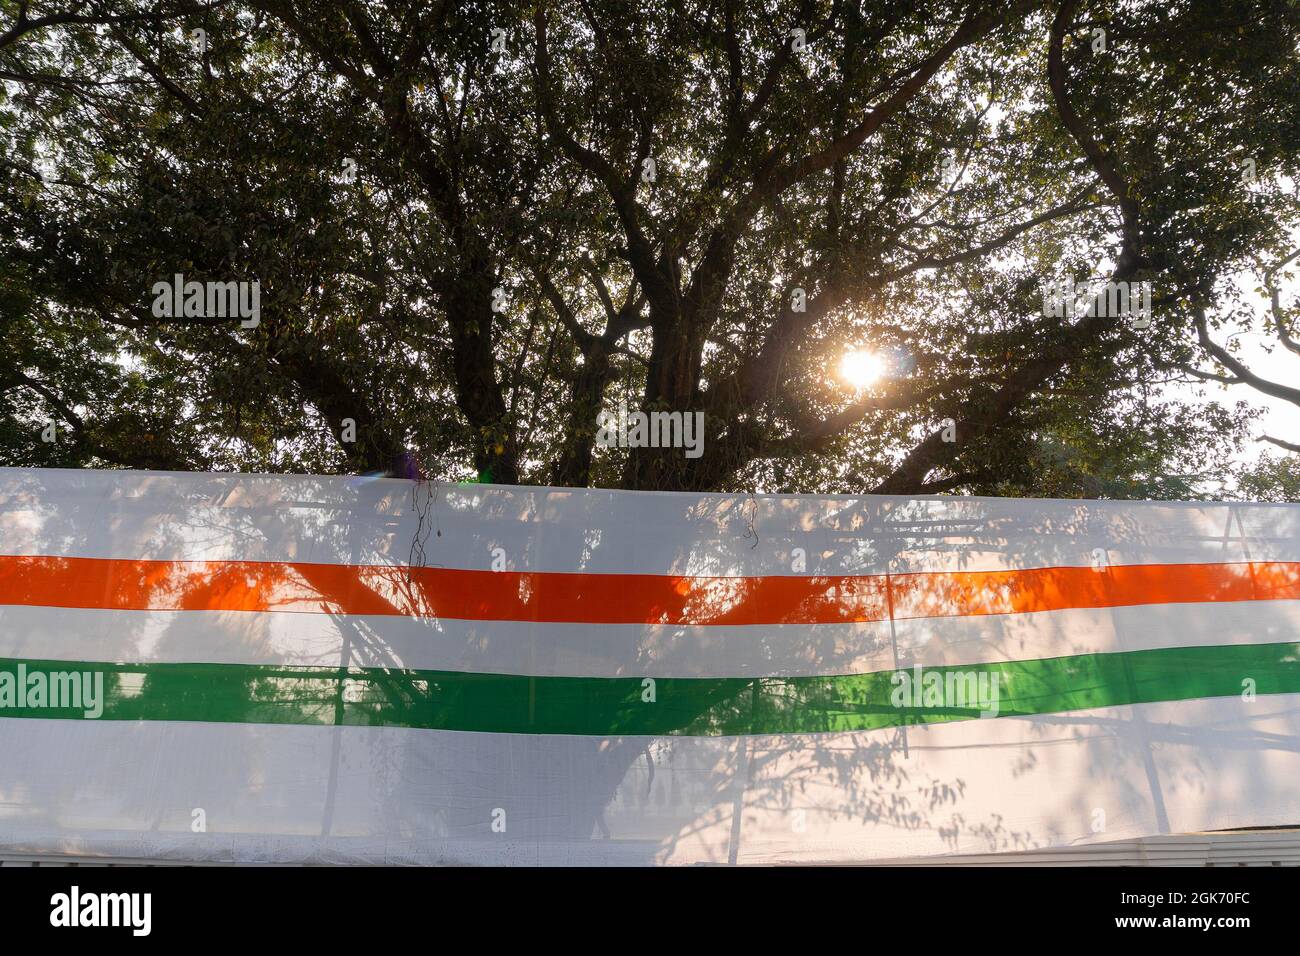 Road Side von Red Road wurde anlässlich des Indenpendence Day of India mit weißem Tuch mit orange und grün gestreiften Farben überzogen. Sonne schien Stockfoto